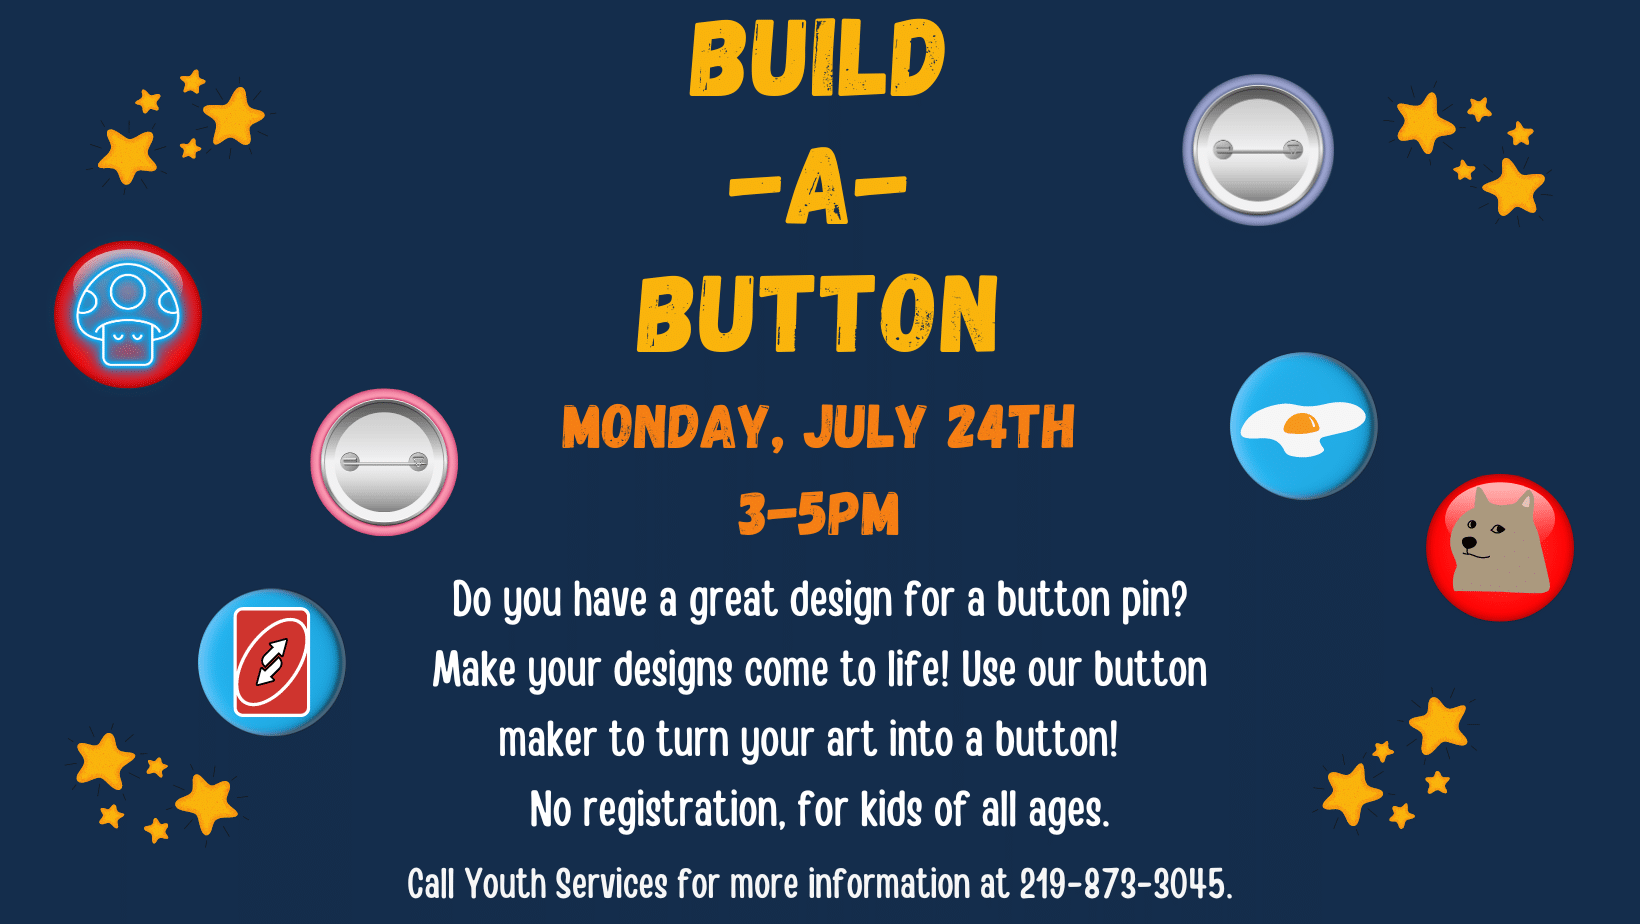 Build a Button, Monday, July 24